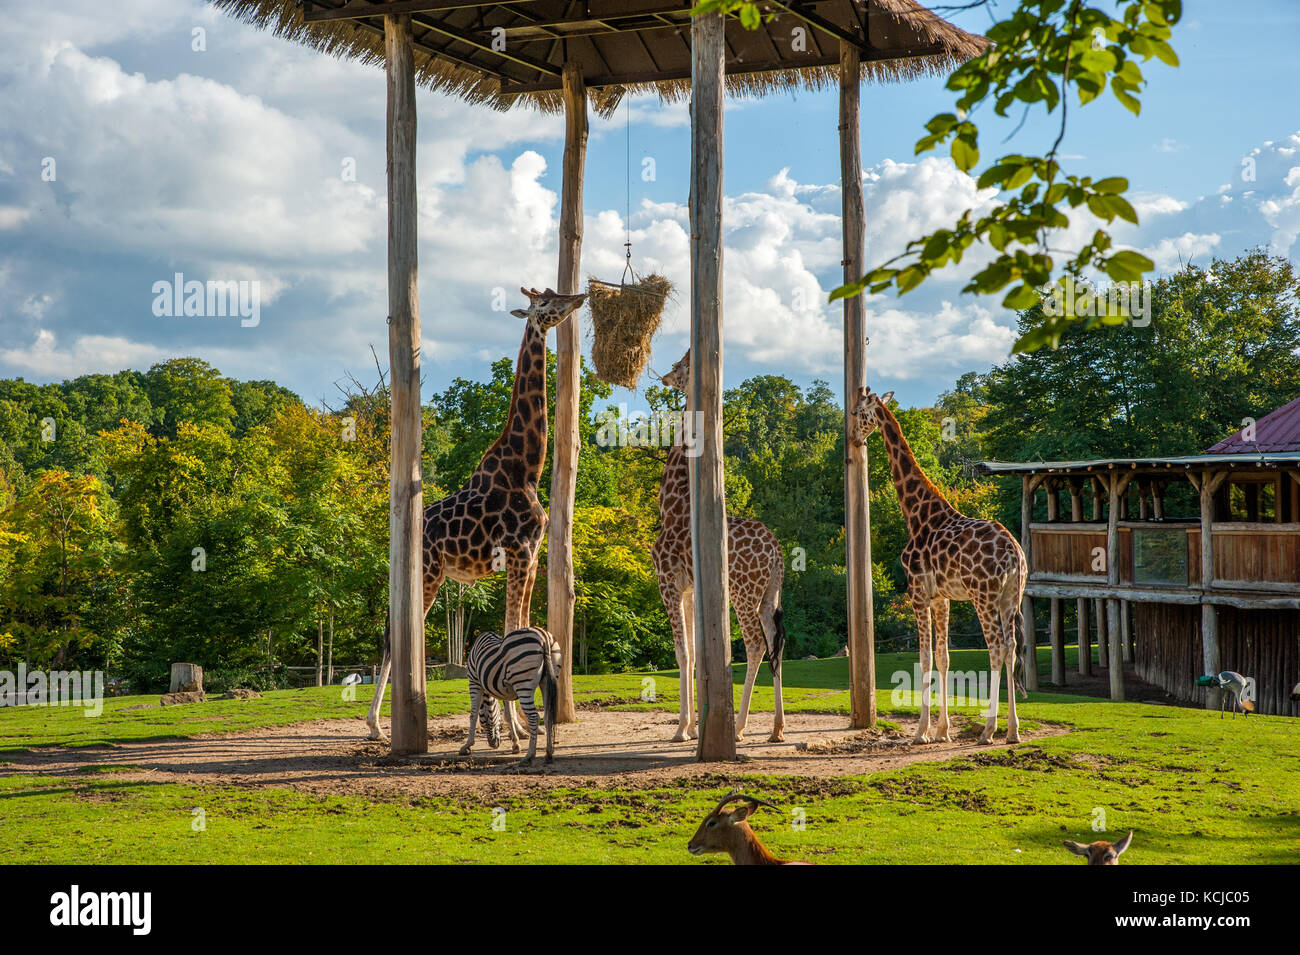 Les Girafes de manger au cours de l'alimentation en temps de paille zoo Banque D'Images